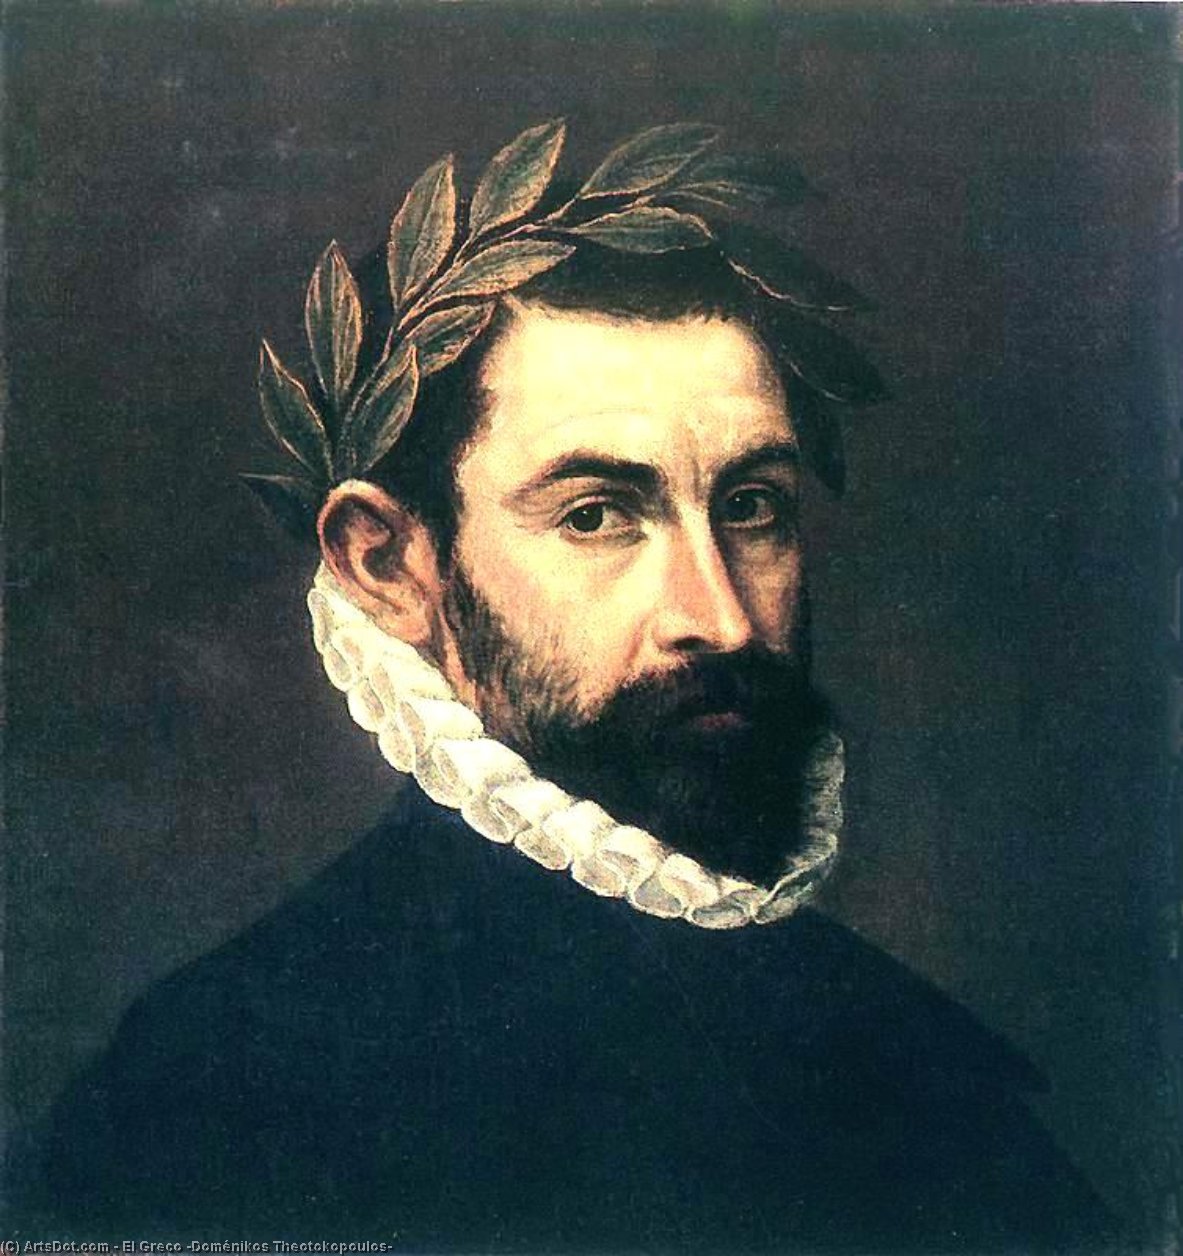 Wikioo.org - The Encyclopedia of Fine Arts - Painting, Artwork by El Greco (Doménikos Theotokopoulos) - Poet Ercilla y Zuniga